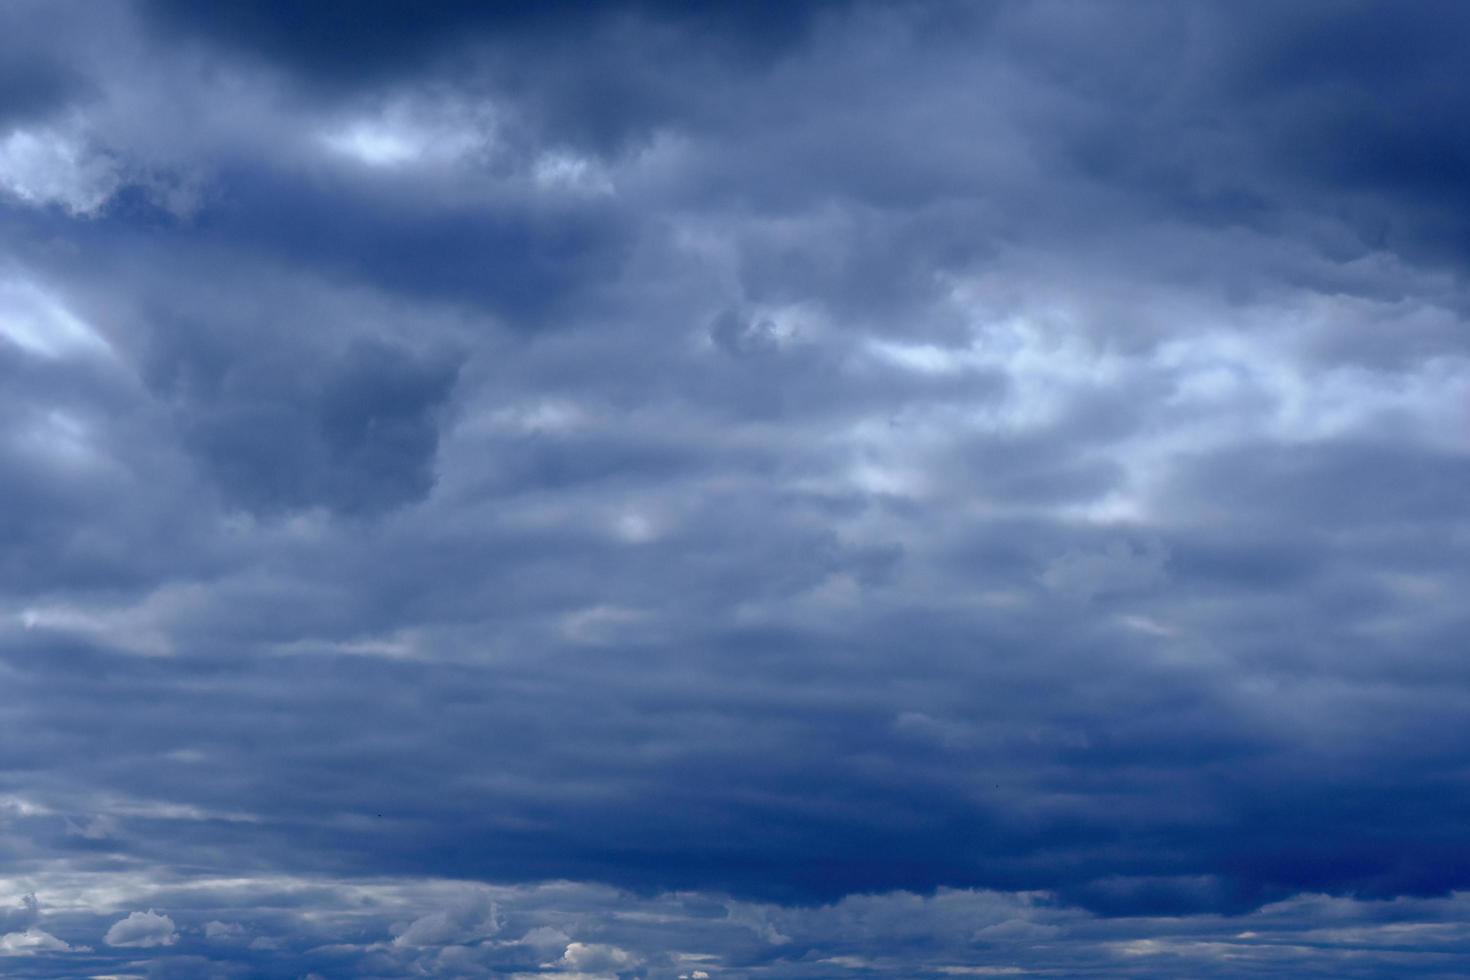 dramatisch hoher tiefblauer Himmel mit flauschigen Wolken foto